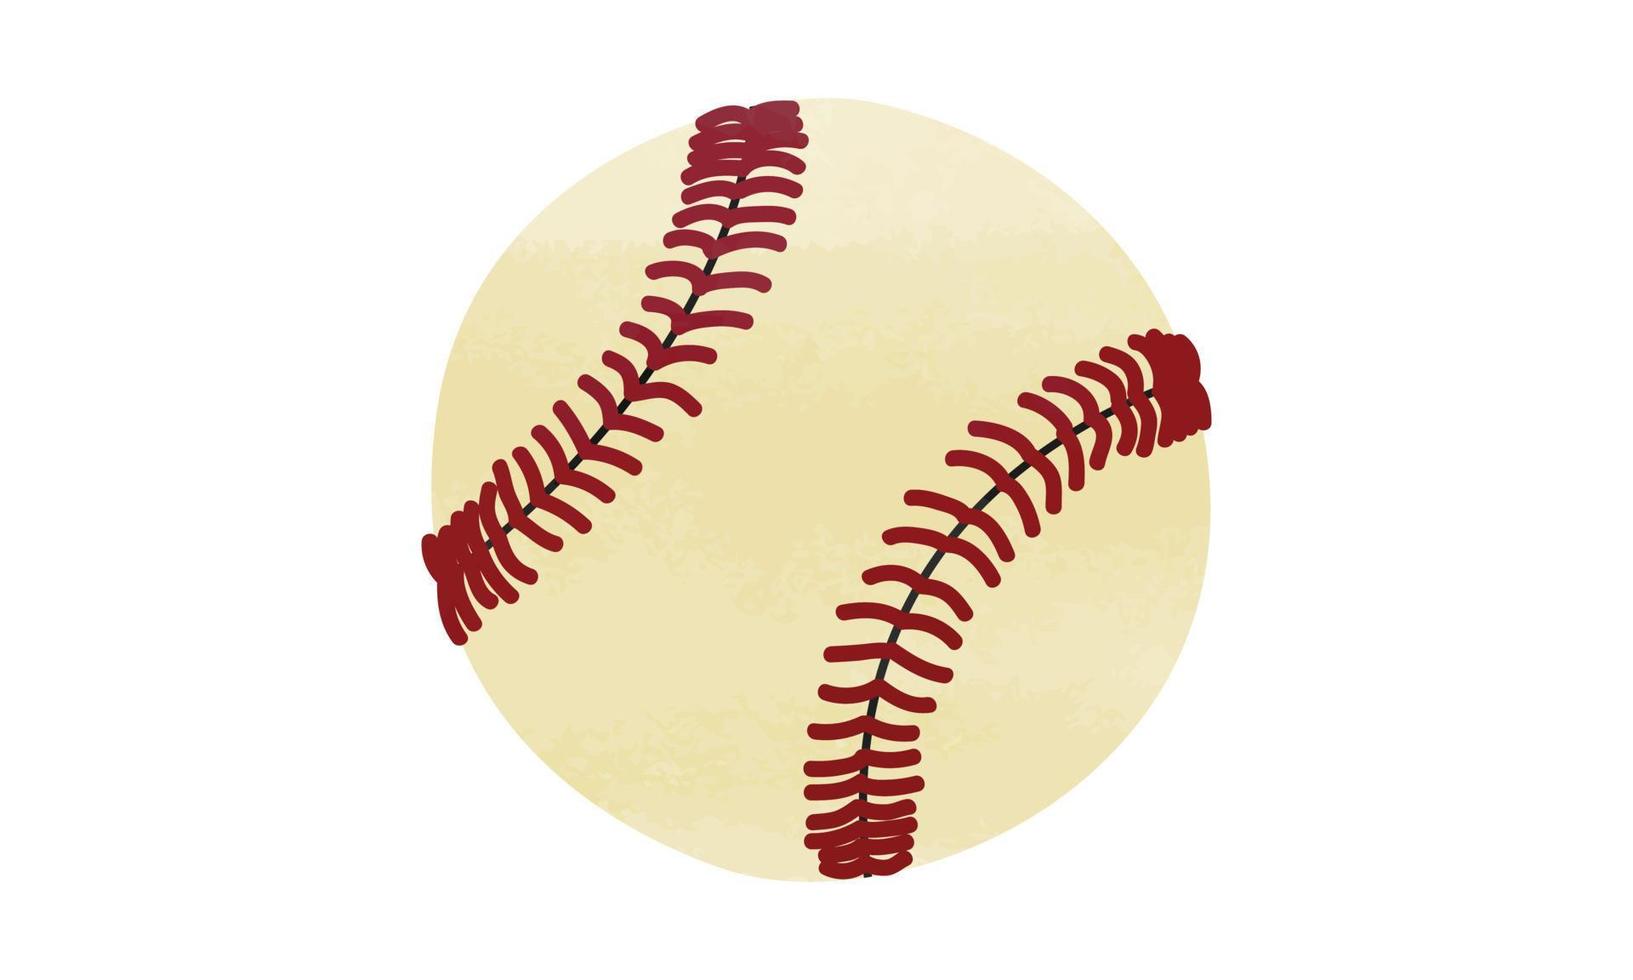 clipart de bola de beisebol. ilustração em vetor estilo aquarela de beisebol simples isolado no fundo branco. bola de beisebol isolada. desenho vetorial desenhado à mão dos desenhos animados de bola de beisebol